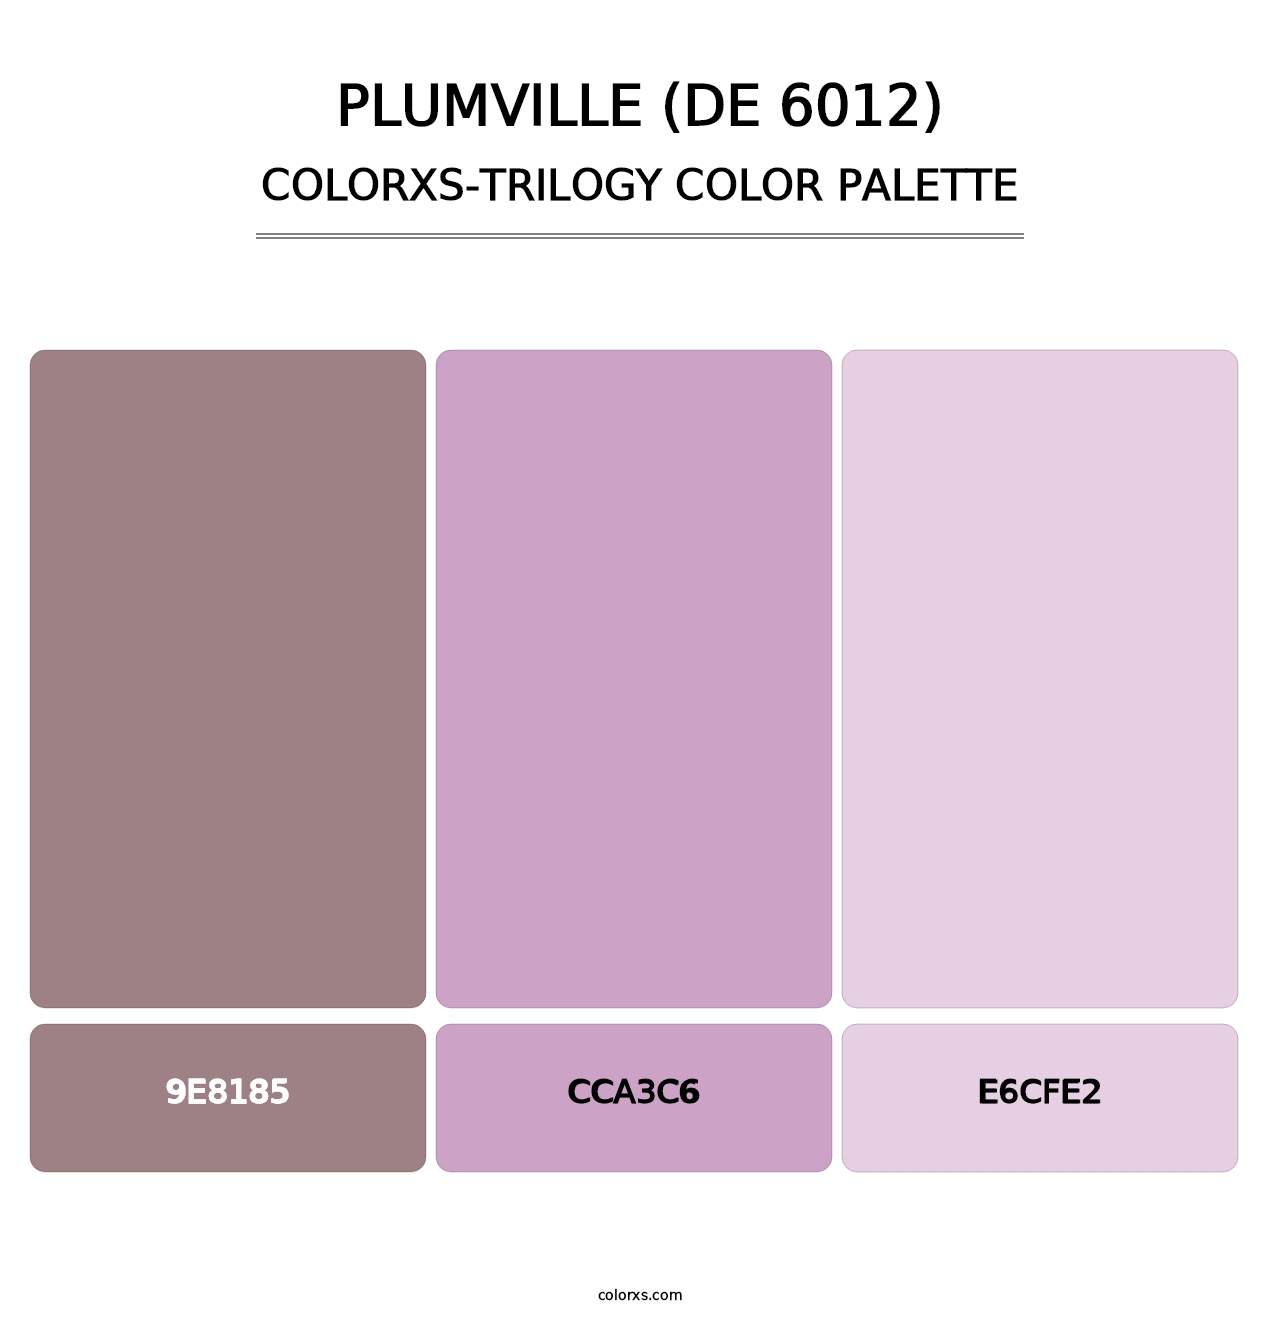 Plumville (DE 6012) - Colorxs Trilogy Palette